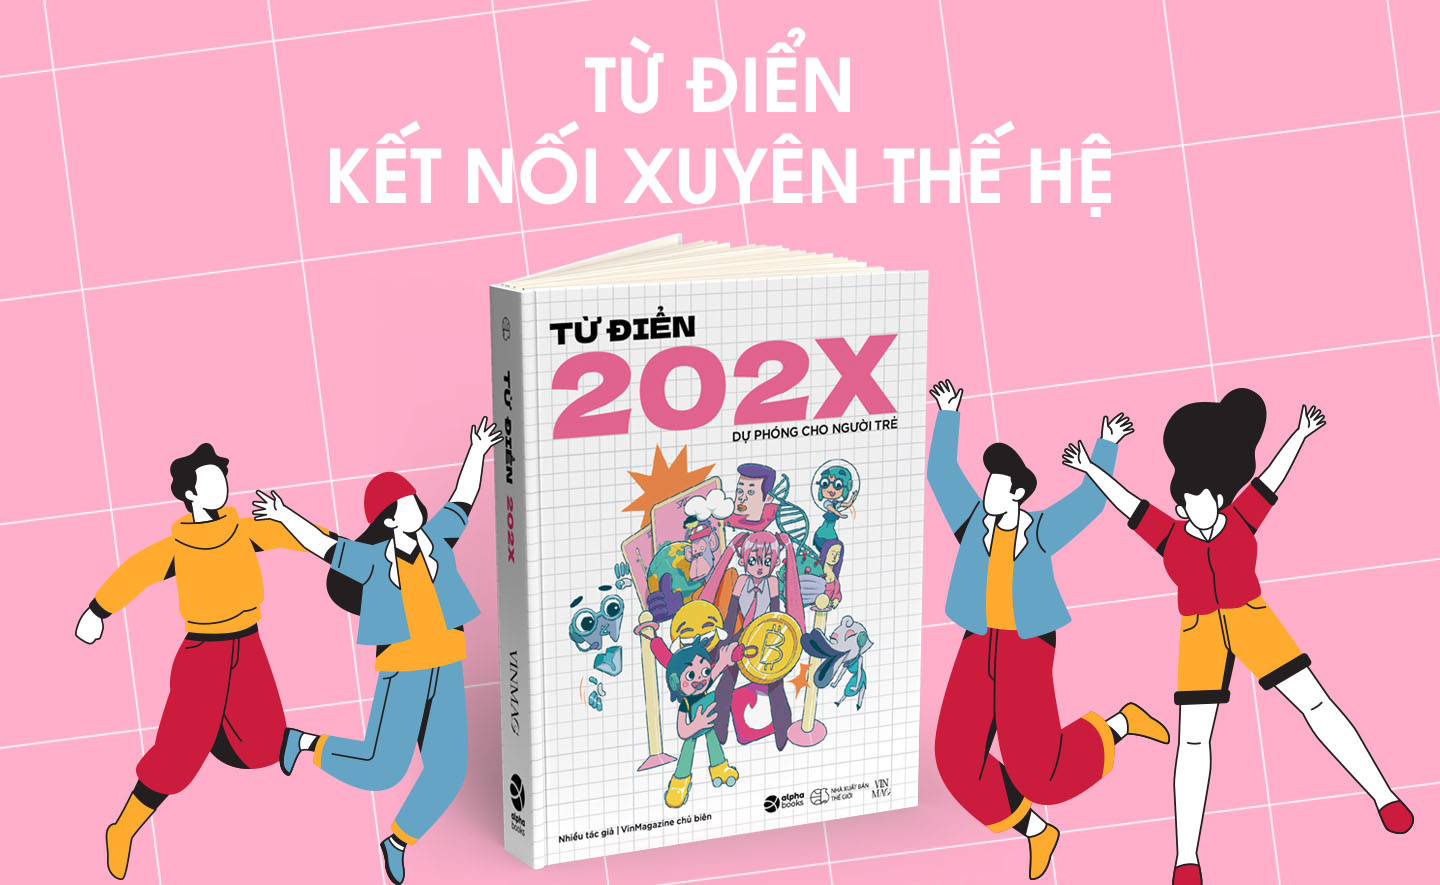 Từ điển 202X - Cuốn sách kết nối xuyên thế hệ để GenZ không còn bị hiểu lầm!